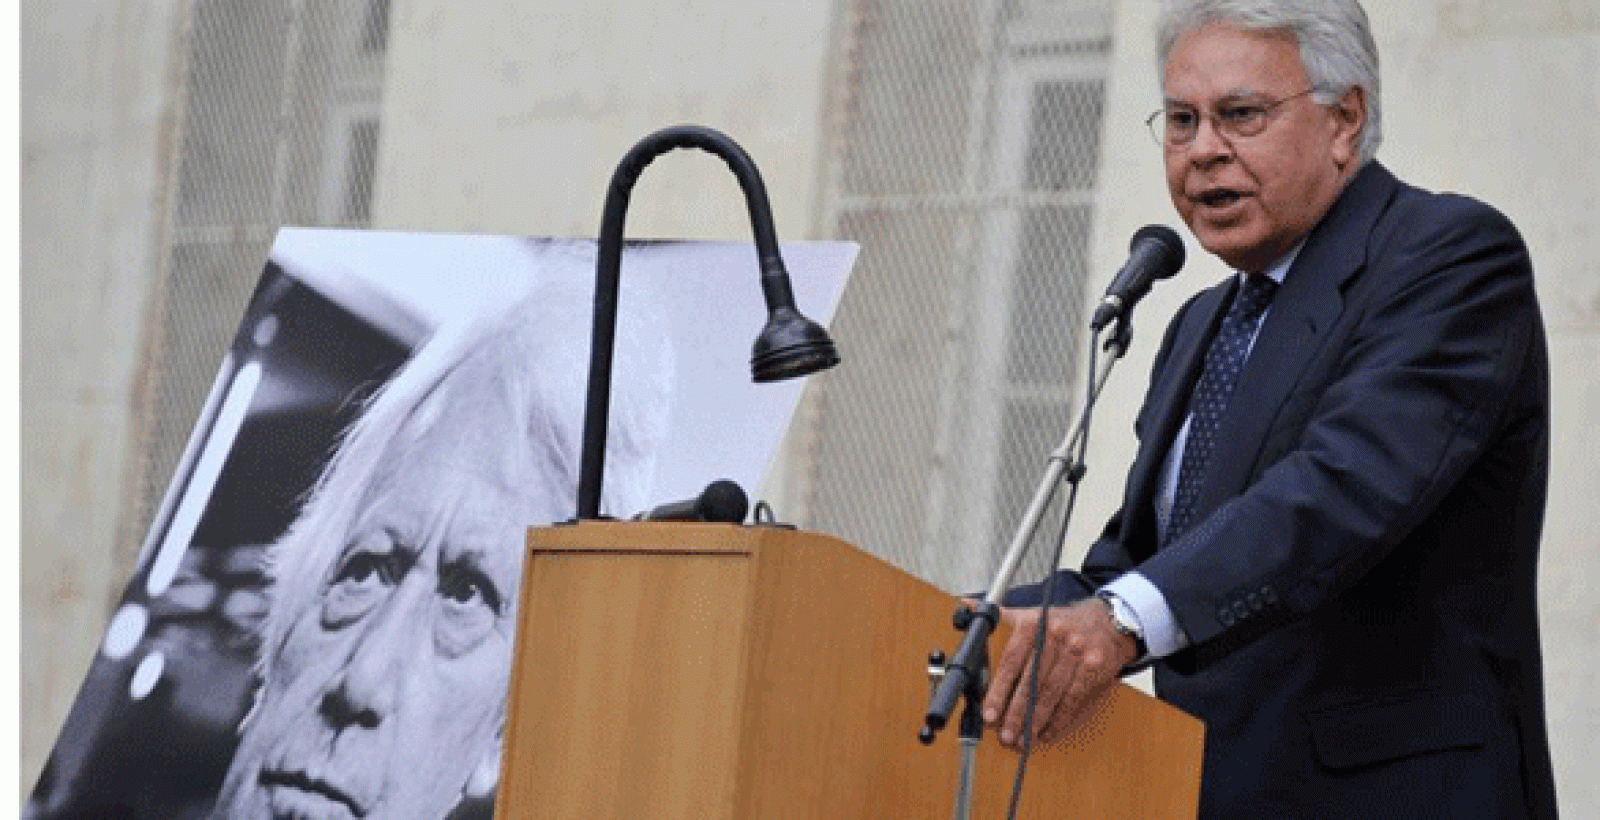 El expresidente Felipe González pronuncia unas palabras durante el homenaje a Jorge Semprún